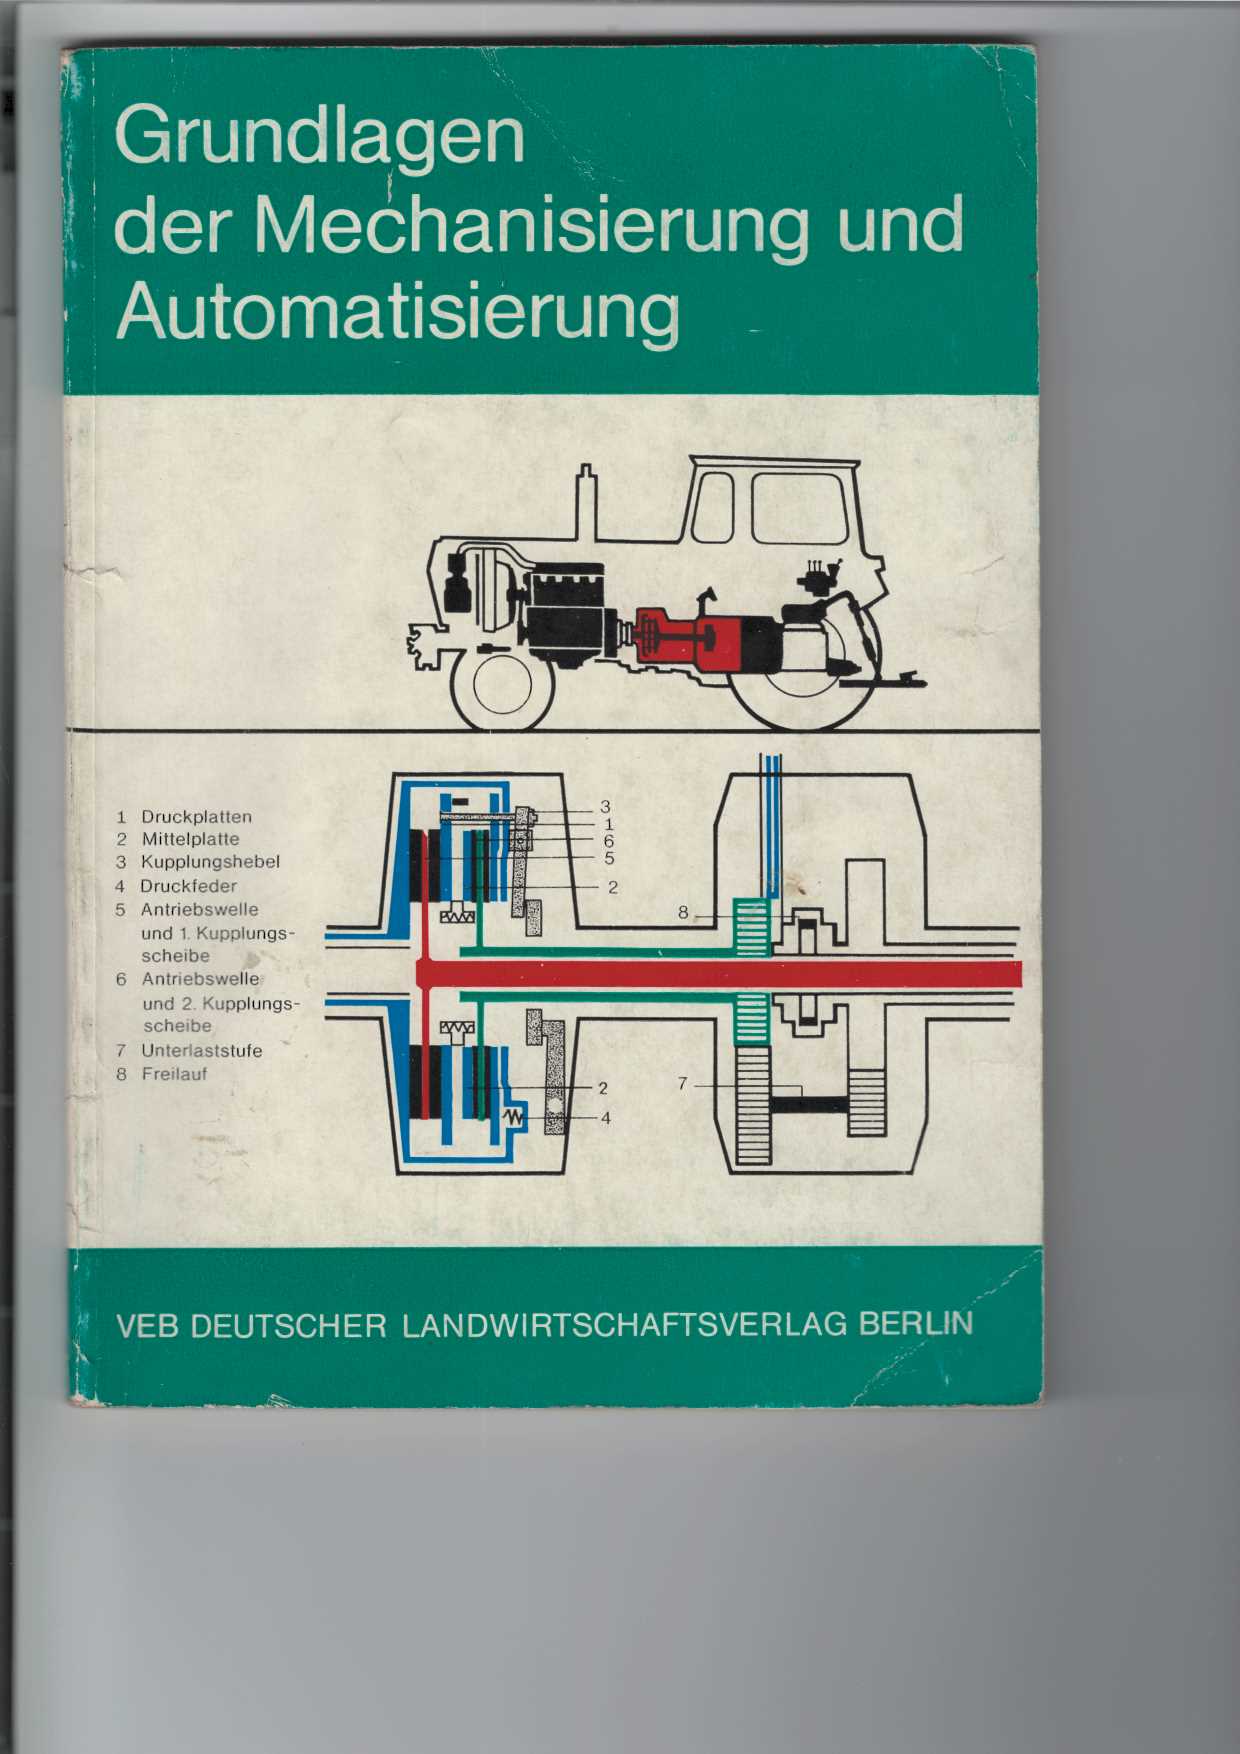 Grundlagen der Mechanisierung und Automatisierung.